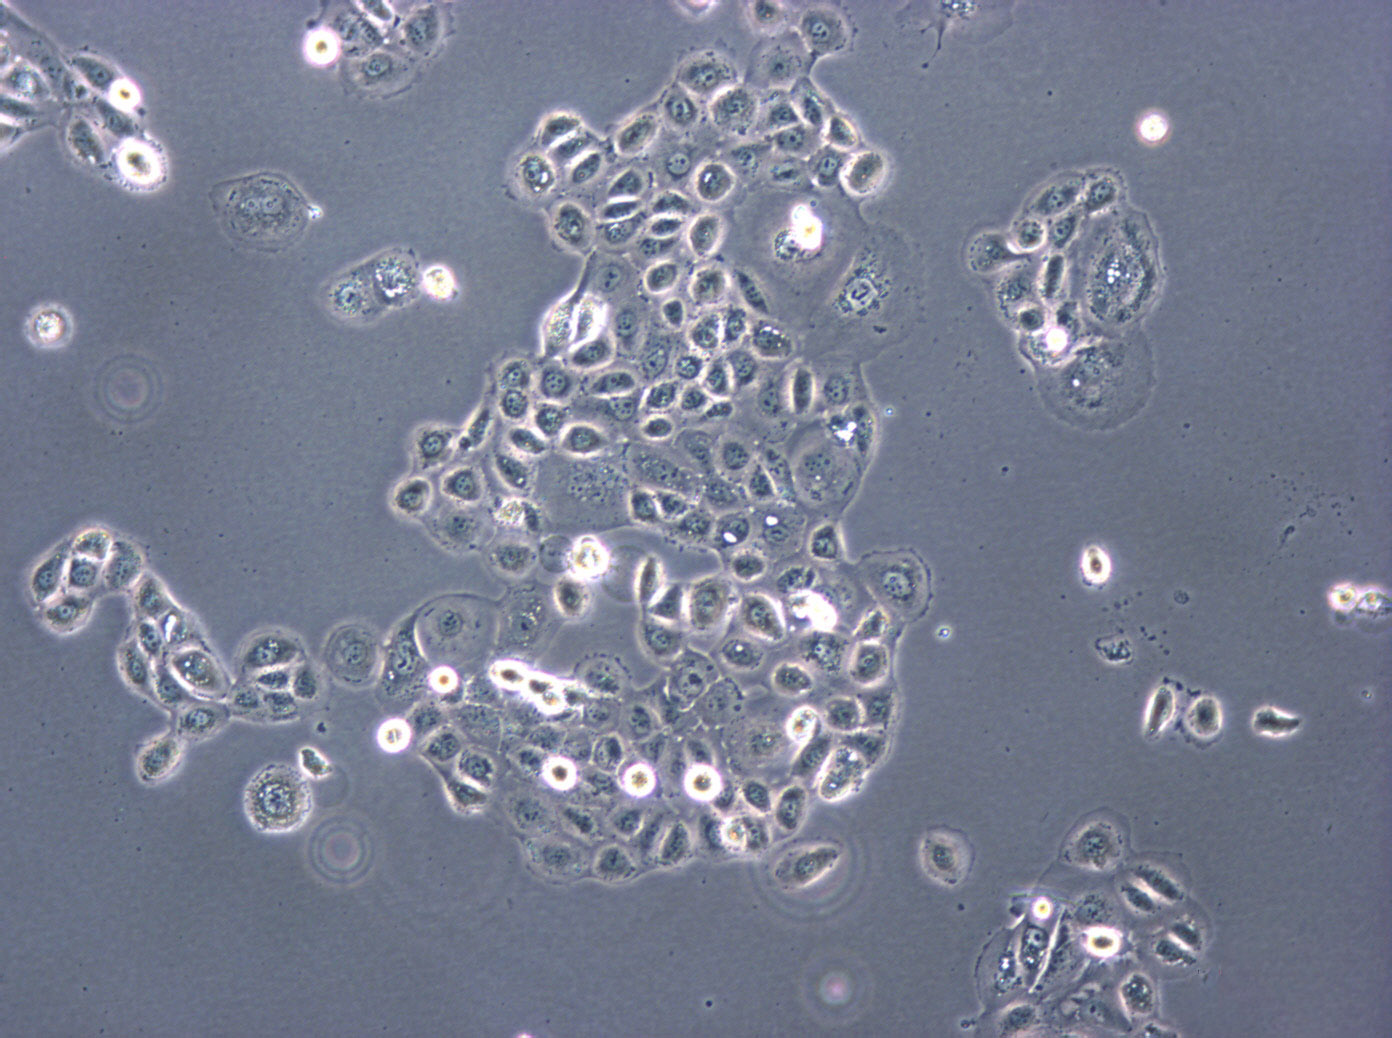 SNU-739 Cells|人肝癌可传代细胞系